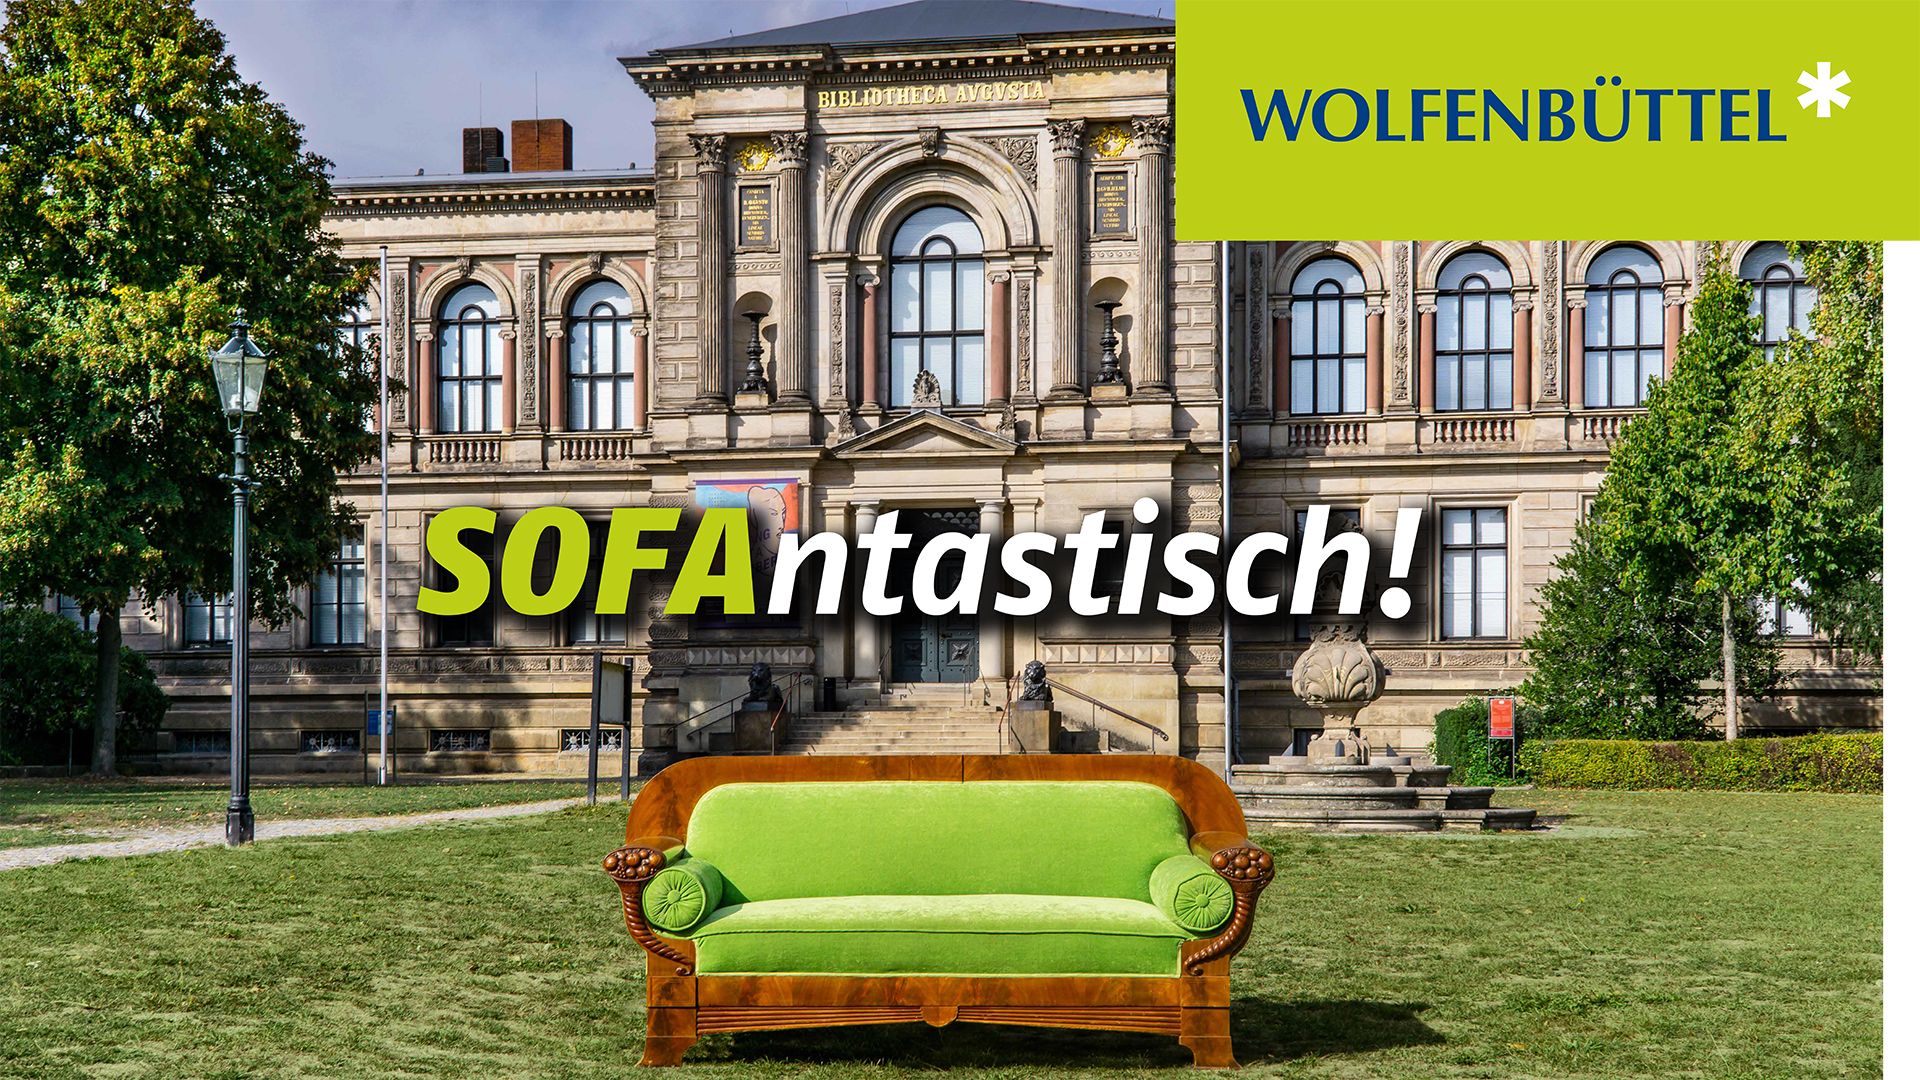 Ein Sofa steht vor dem Gebäude der Herzog-August-Bibliothek. Das Plakatmotiv wird ergänzt durch die Schriftzüge "Wolfenbüttel" und "Sofantastisch!"